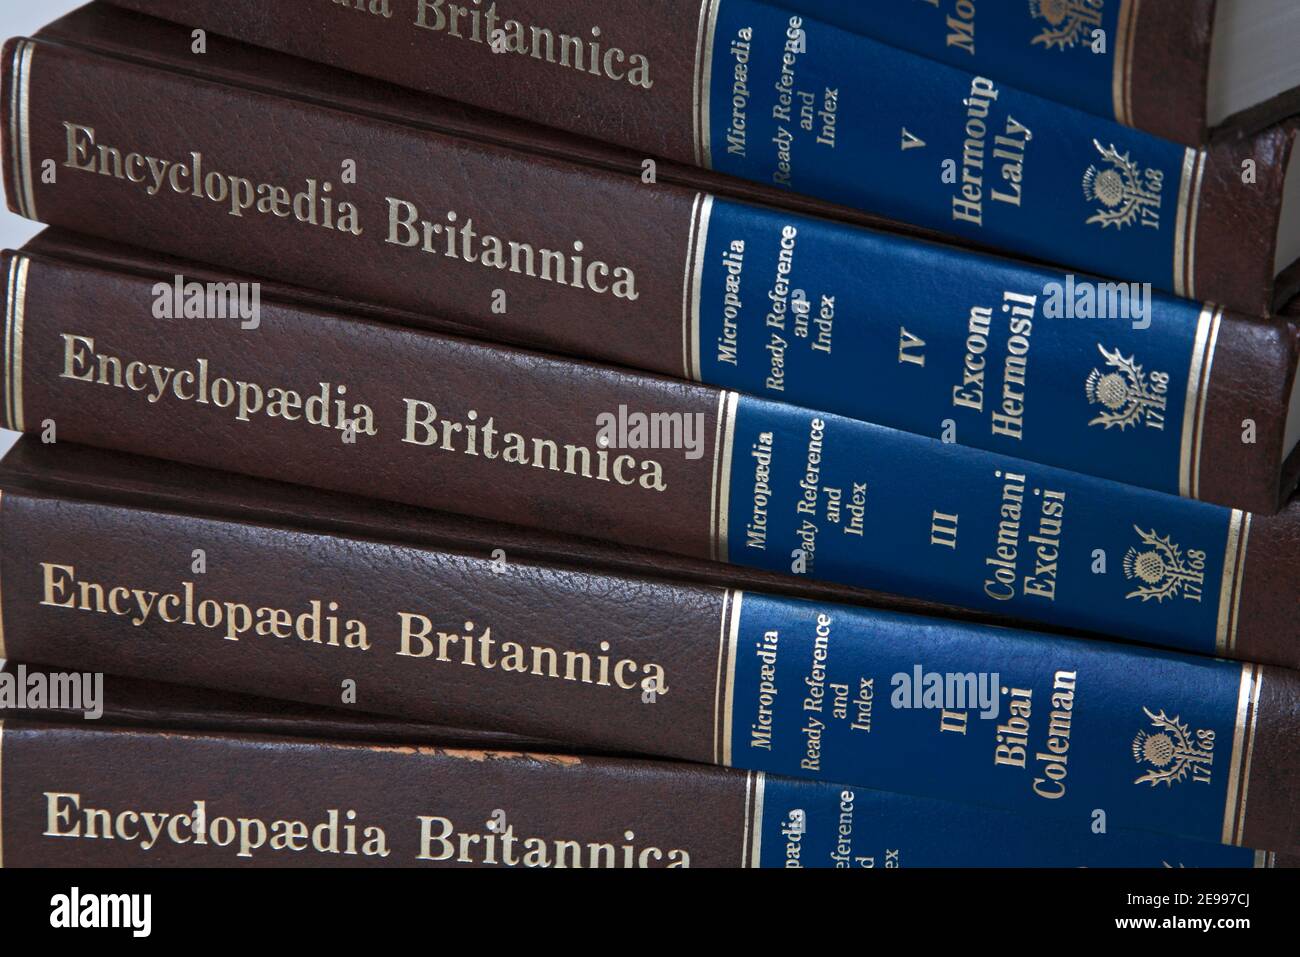 Un primer plano de parte de la sección de Micropedia de la Nueva Enciclopedia Britannica edición 1980 volúmenes con Ready Reference e Index. Foto de stock